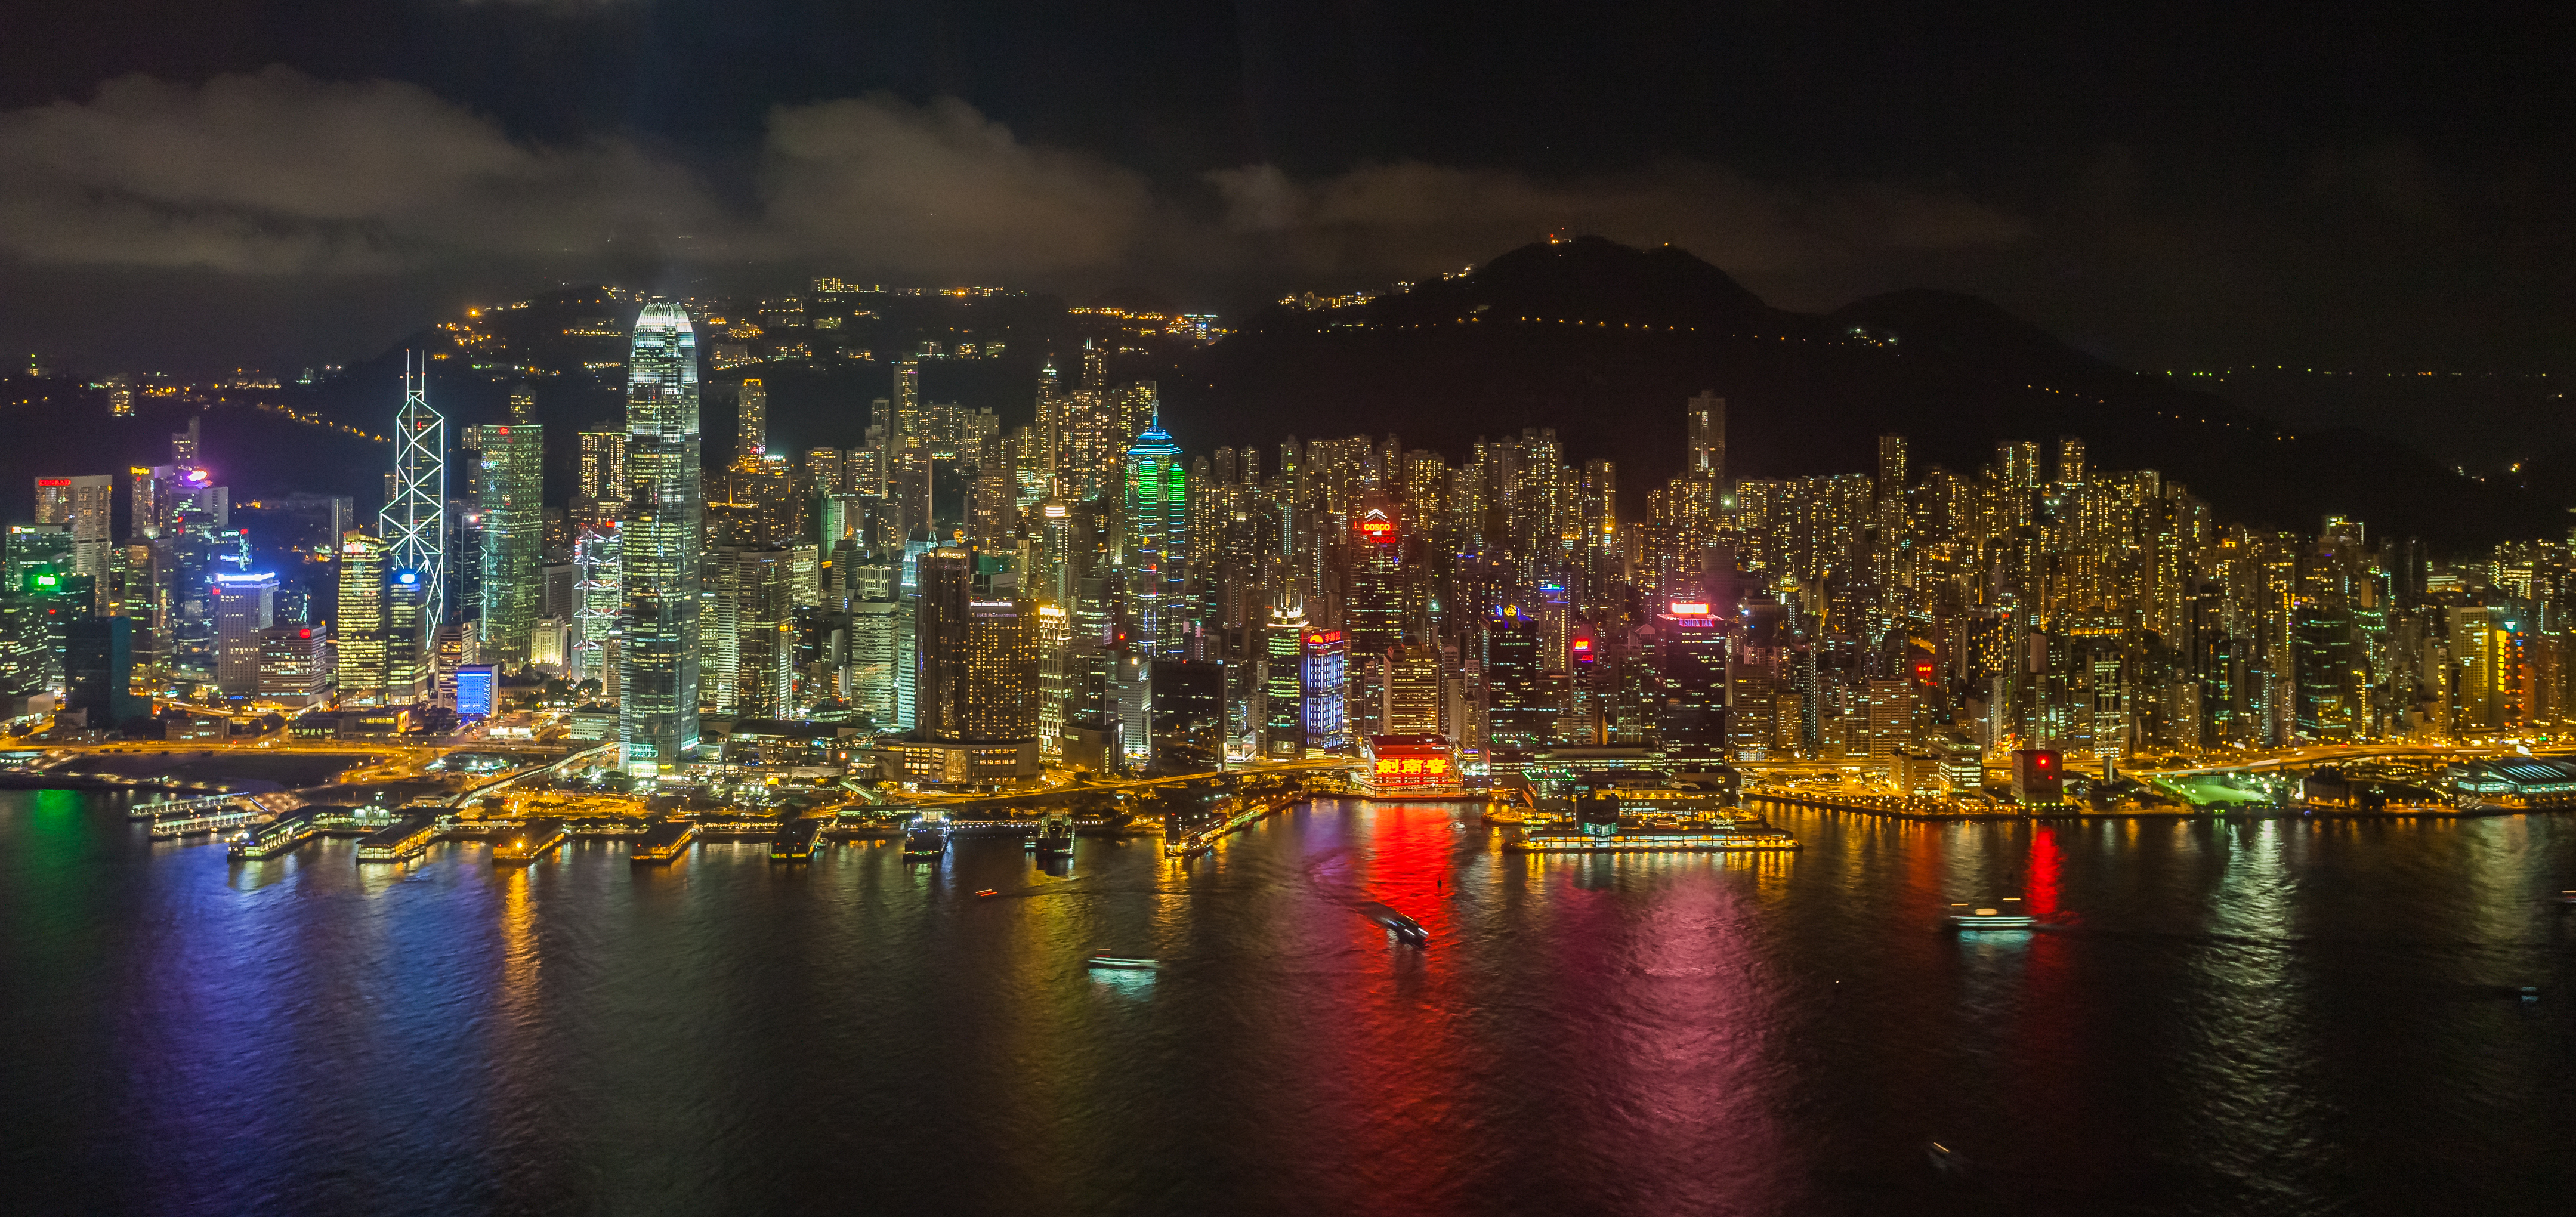 Vista del Puerto de Victoria desde Sky100, Hong Kong, 2013-08-09, DD 13.JPG